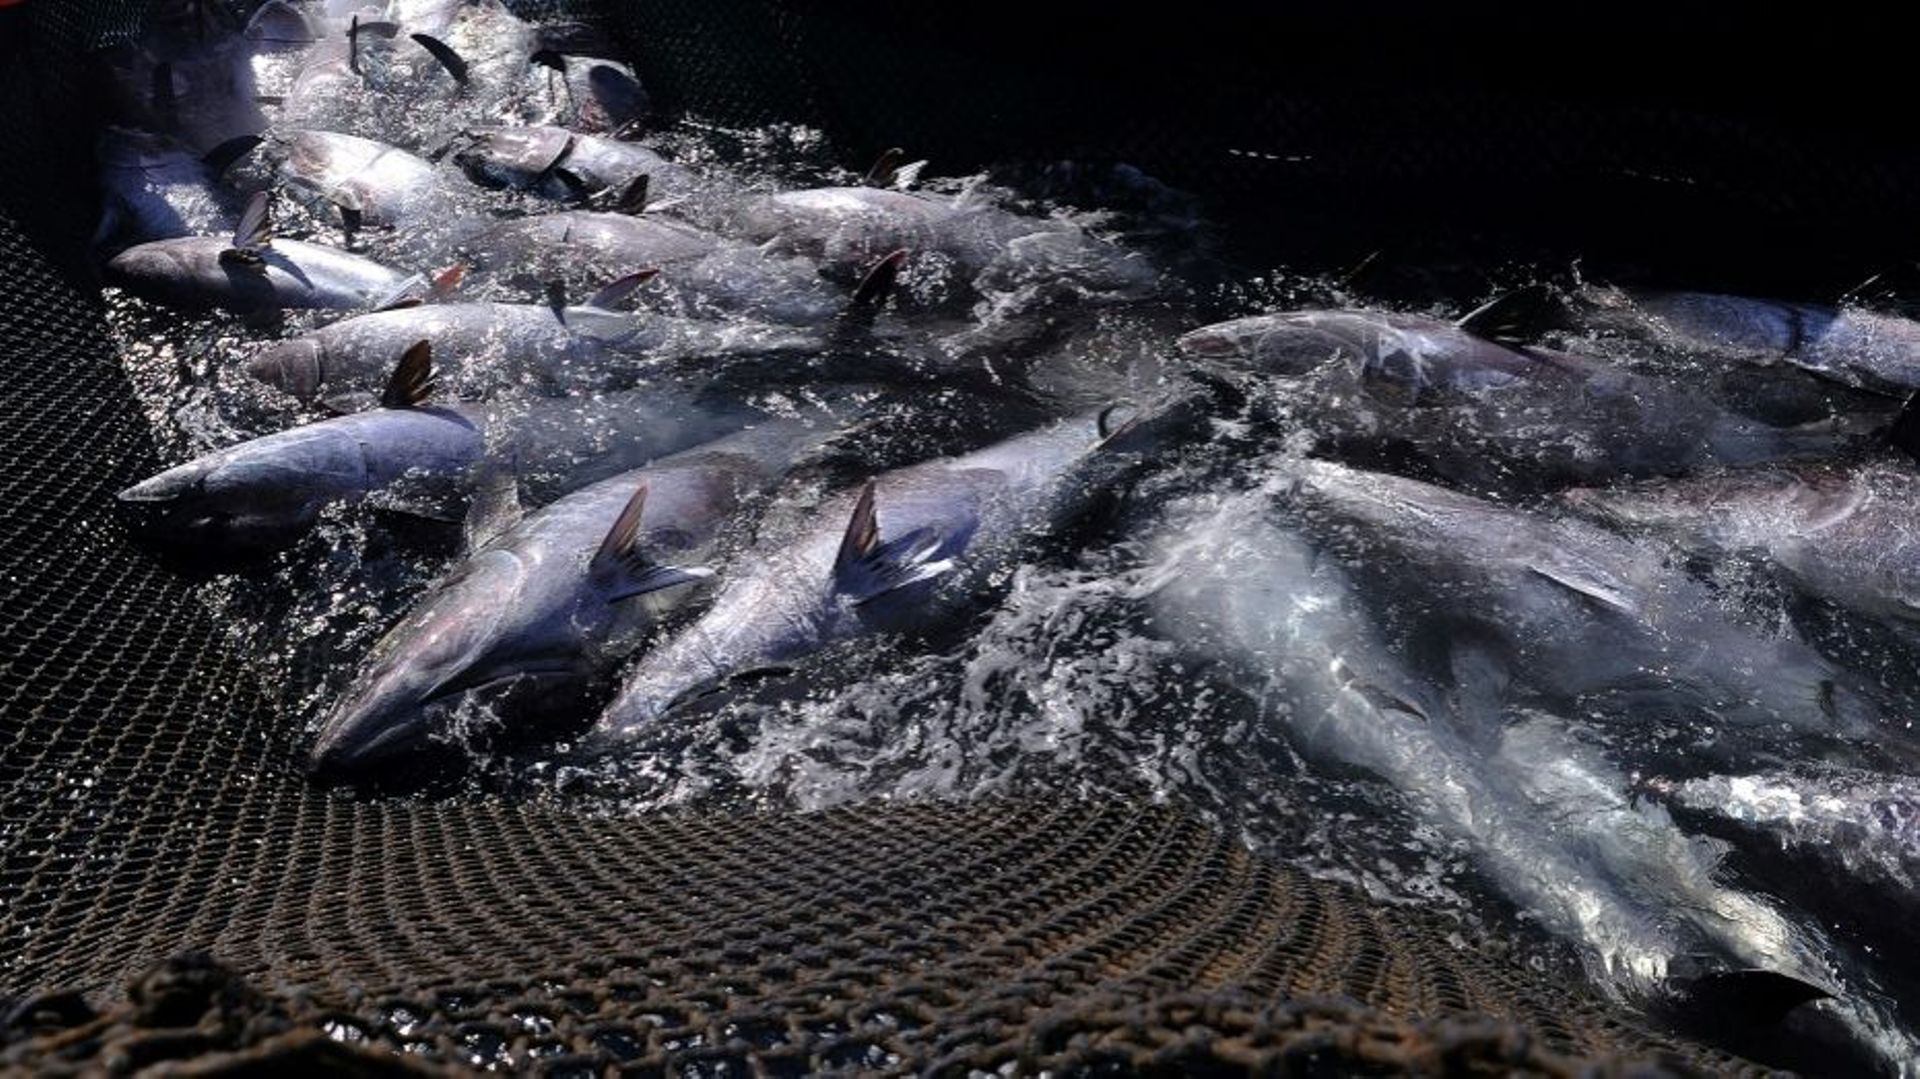 Après avoir failli disparaître, le thon rouge de Méditerranée a repeuplé la mer à force de quotas et contrôles draconiens